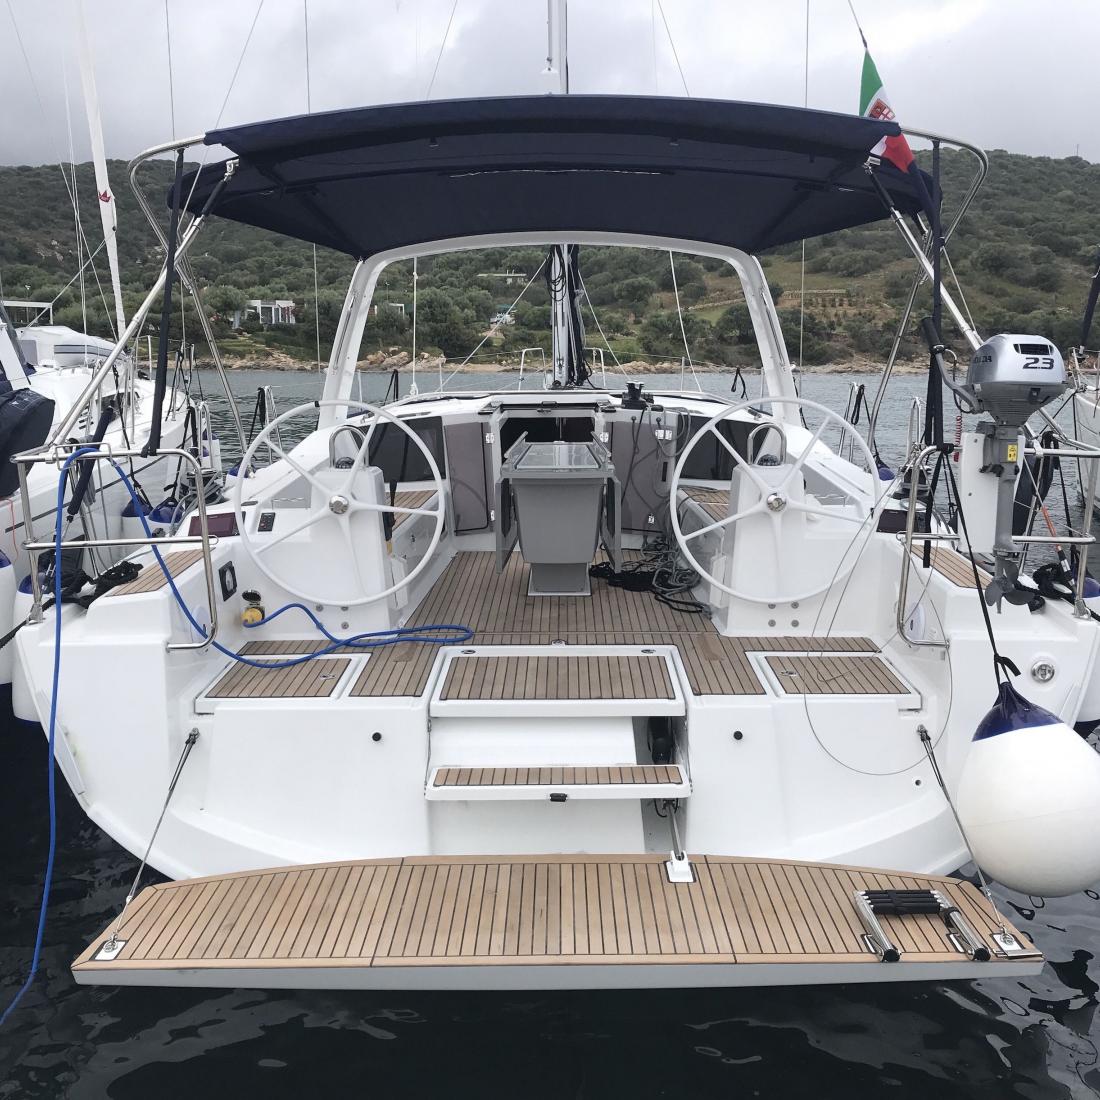 oceanis charter vela sardegna costa smeralda maddalena skipper vacanze mare italia corsica 